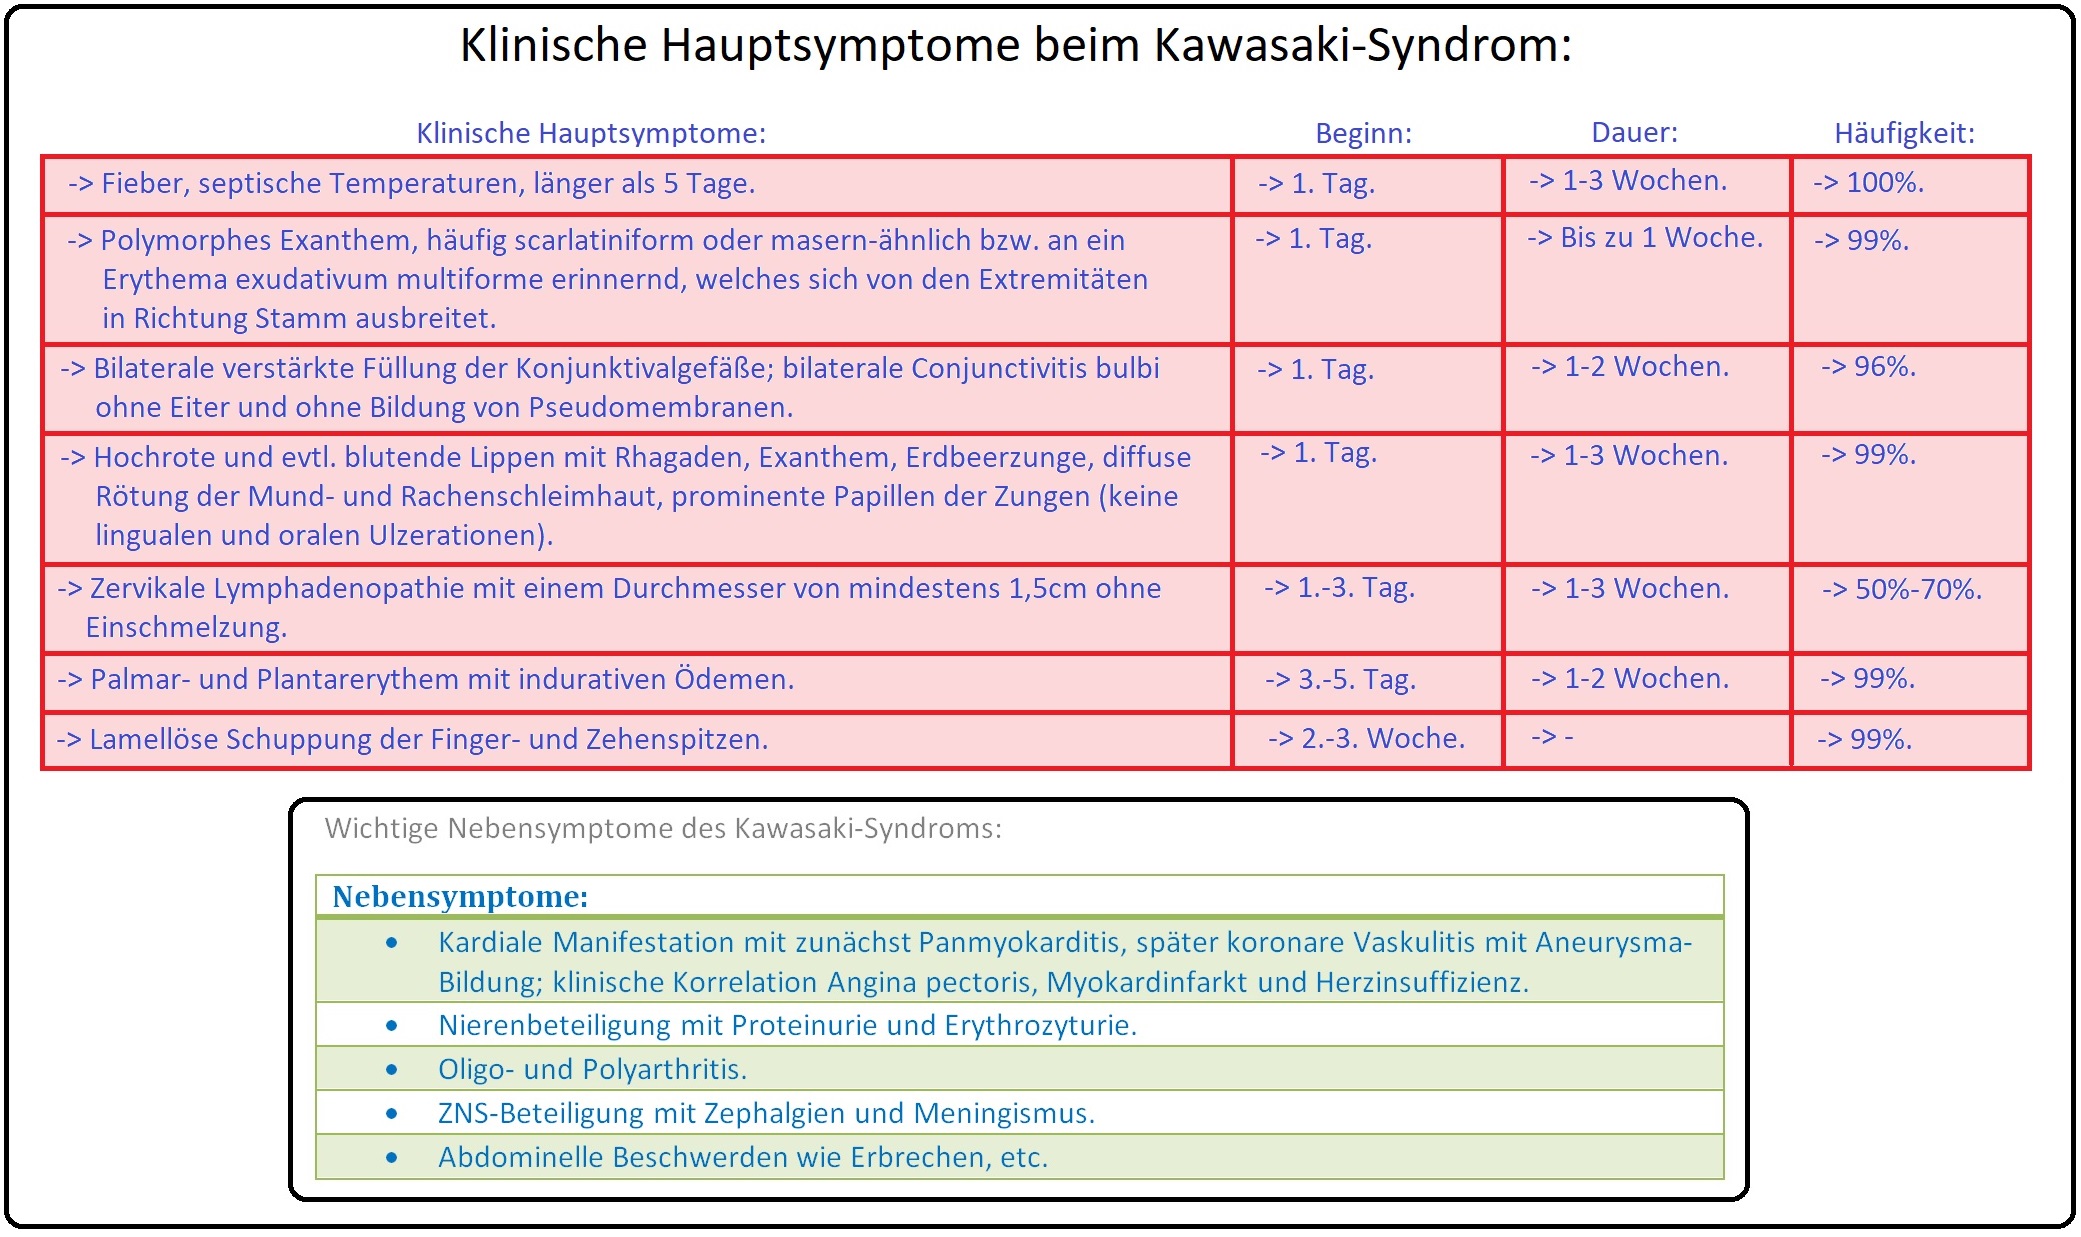 001 Klinische Hauptsymptome beim Kawasaki Syndrom